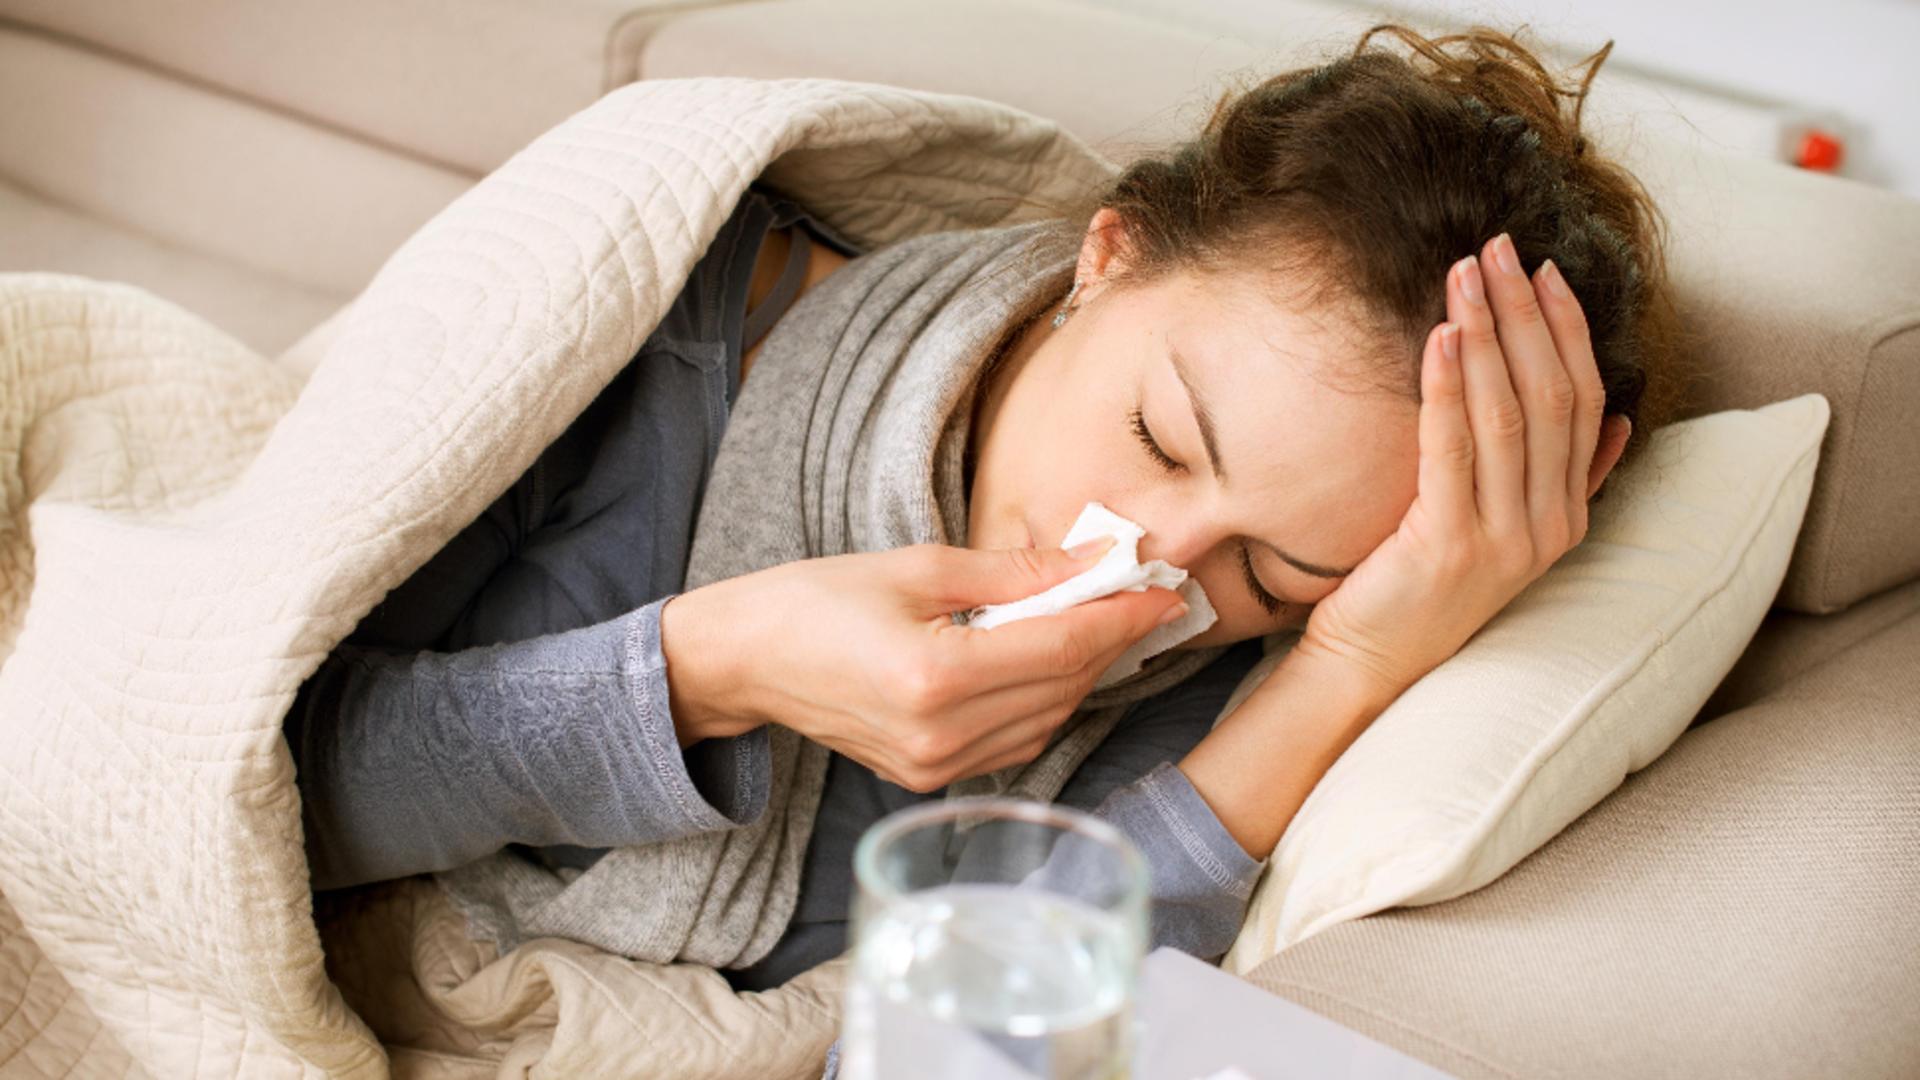 Avertismentul unui medic după creșterea cazurilor de gripă și viroze: Nu folosiți leacuri băbești sau ce ne recomandă rudele sau prietenii